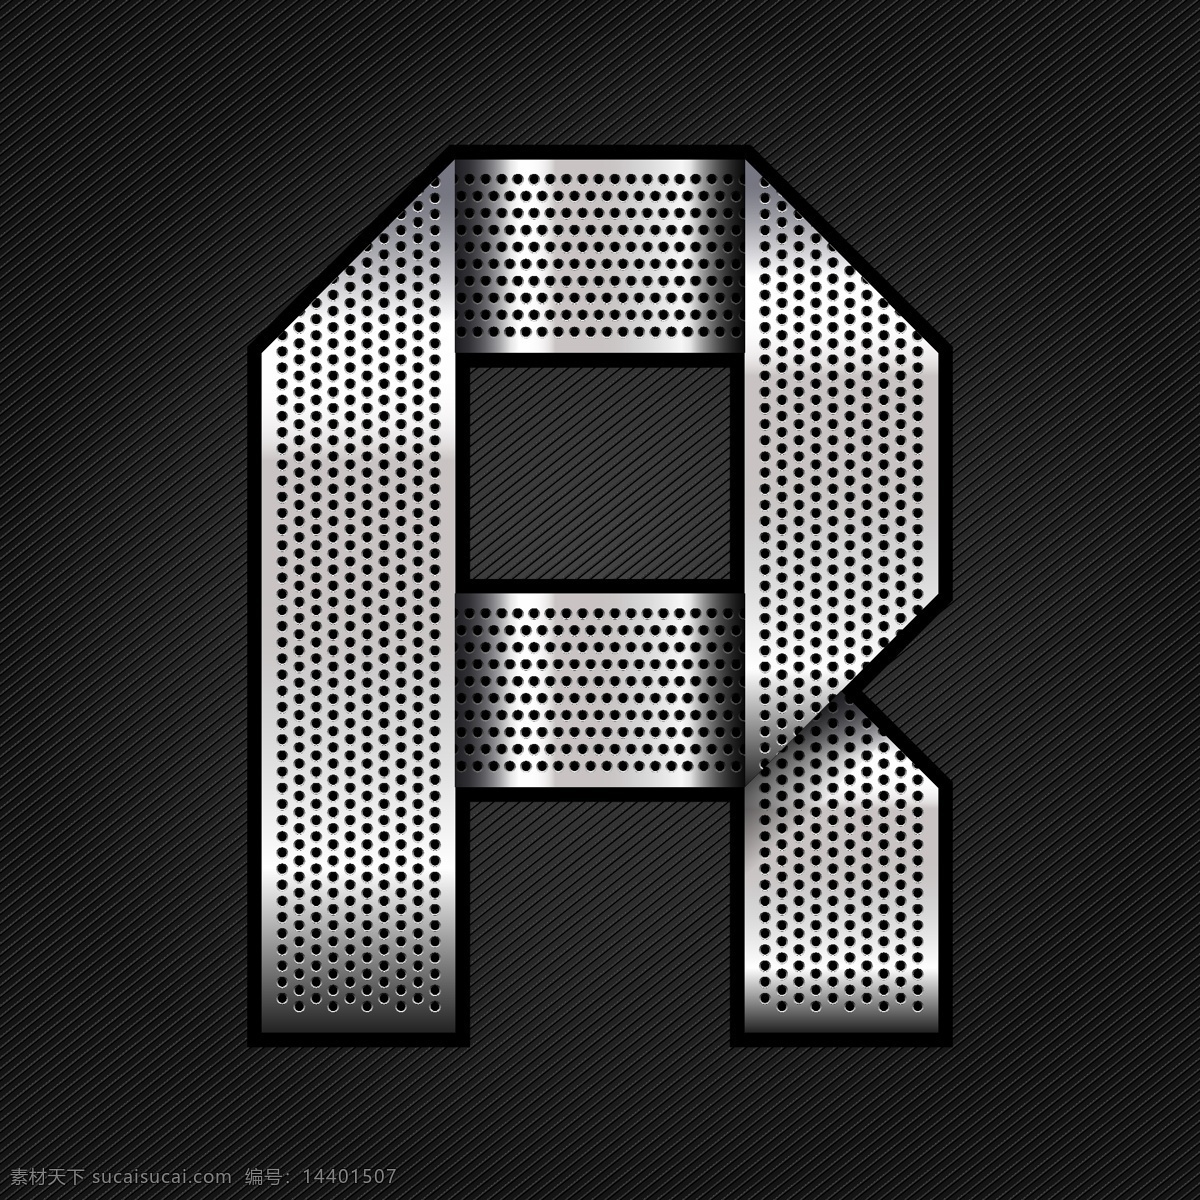 金属字母r 金属字母 r 素材设计 立体 灰色 书画文字 文化艺术 矢量素材 黑色